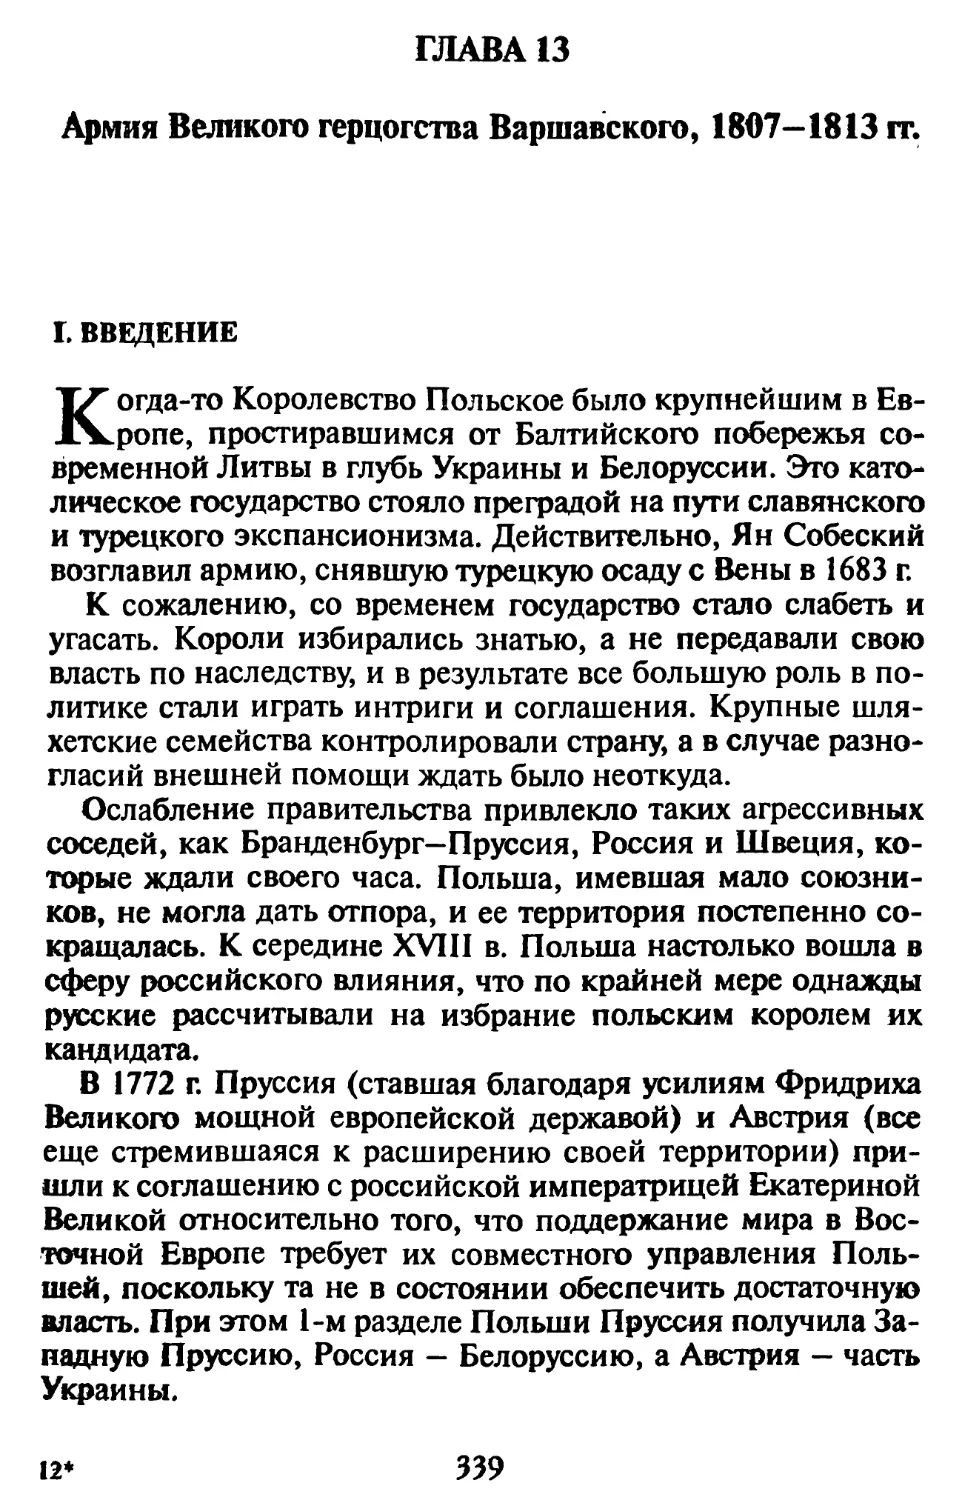 Гл. 13. АРМИЯ ВЕЛИКОГО ГЕРЦОГСТВА ВАРШАВСКОГО, 1807-1813 гг.